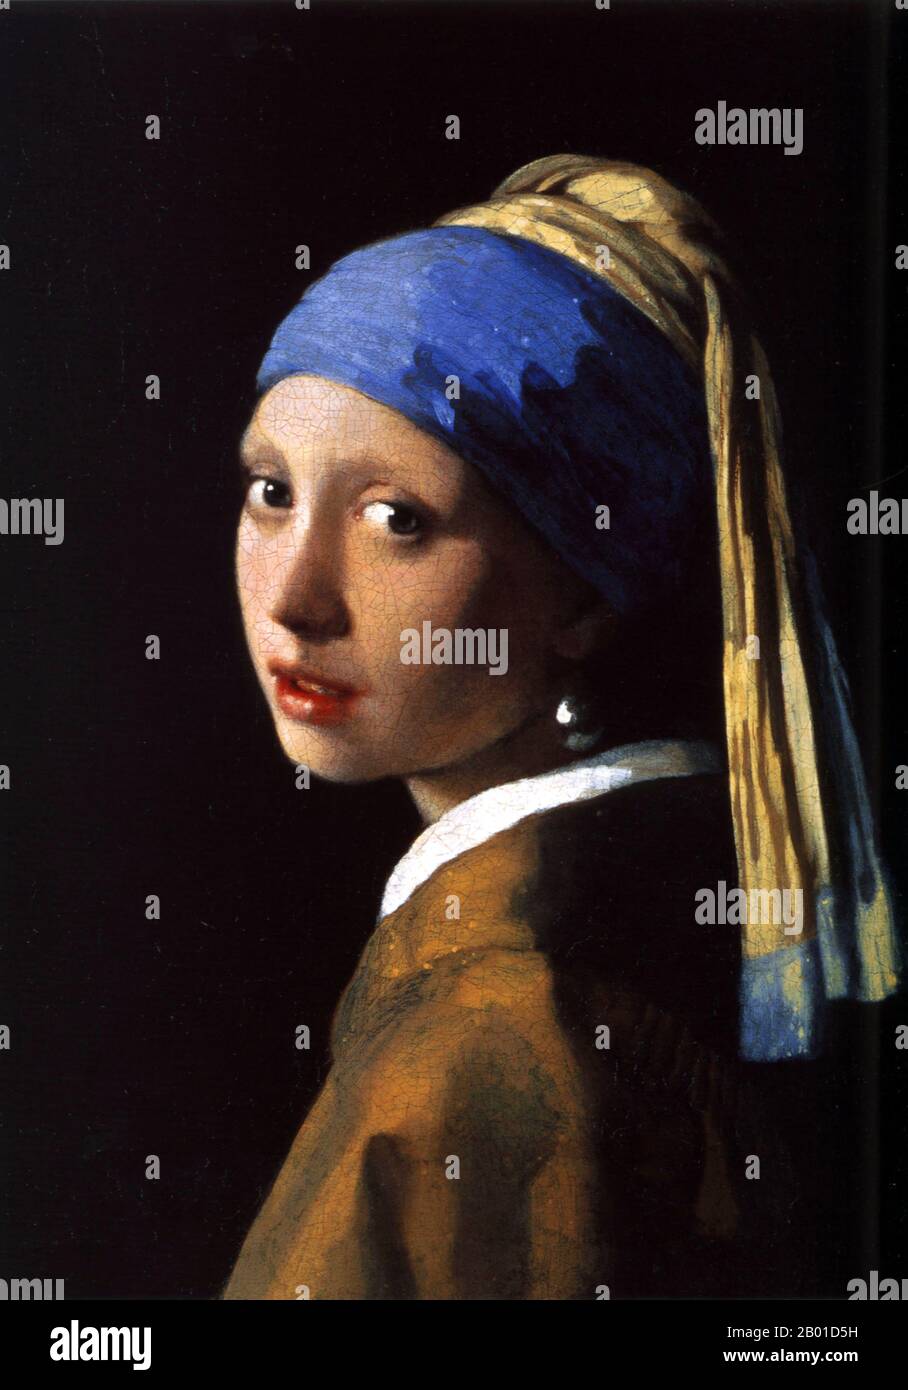 Pays-Bas: 'Fille avec une perle Earring'. Peinture à l'huile sur toile par Johannes Vermeer (31 octobre 1632 - 15 décembre 1675), c. 1665. Le tableau 'fille avec une perle Earring' (néerlandais: Het Meisje met de Parel) est l'un des chefs-d'œuvre du peintre néerlandais Johannes Vermeer et, comme son nom l'indique, utilise une perle arring pour un point focal. Aujourd'hui, la peinture est conservée dans la galerie Mauritshuis de la Haye. On parle parfois de « la Joconde du Nord » ou de « la Joconde des pays-Bas ». Banque D'Images